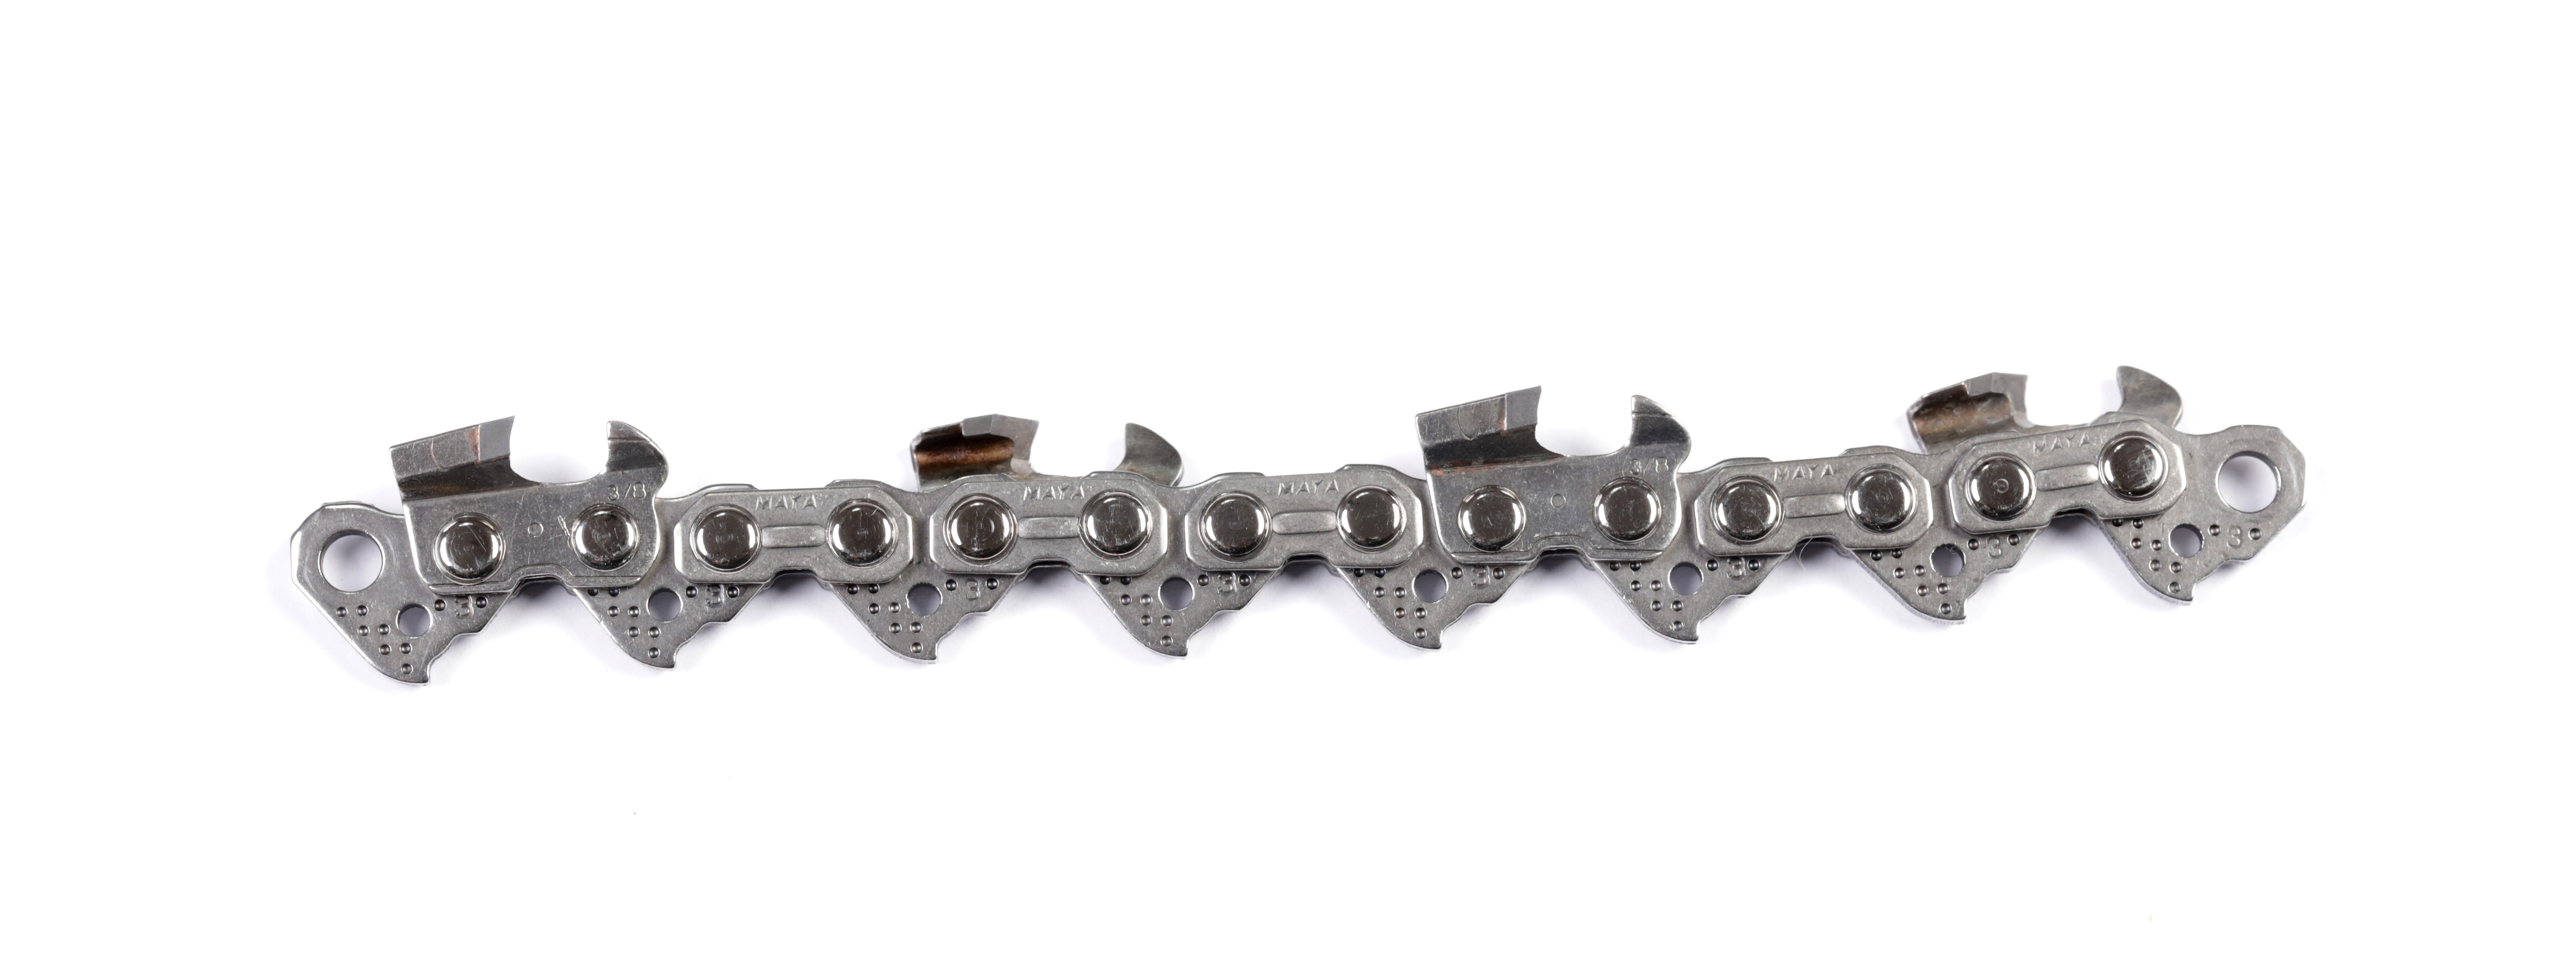 Carbide Chainsaw Chain,Carbide Chainsaw Chain Supplier,China Carbide Chainsaw Chain Supplier